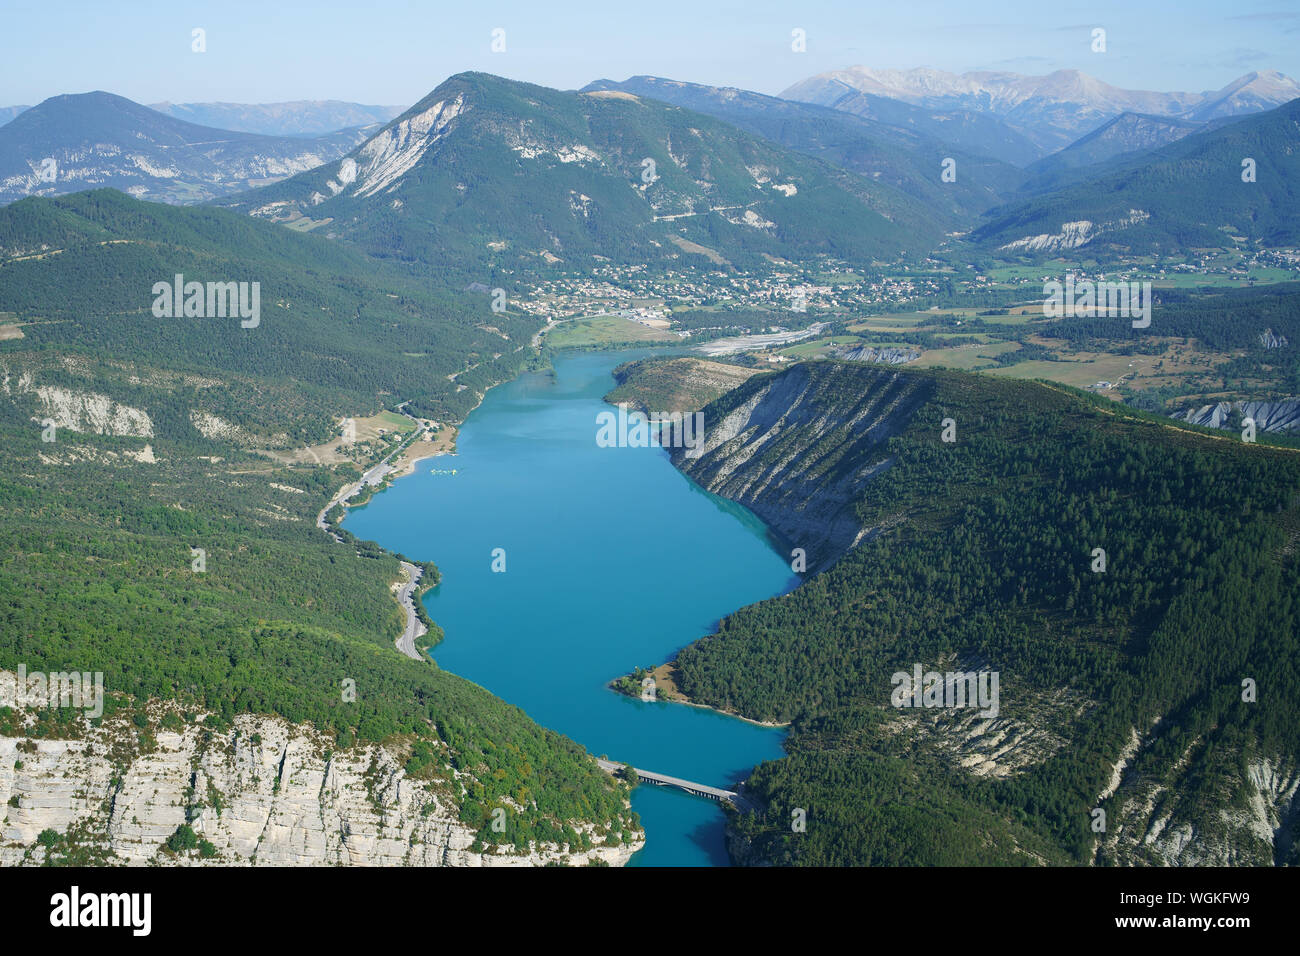 VISTA AEREA. Parte superiore del lago Castillon con la città di Saint-André alla fine del lago. Alpes de Haute-Provence, Francia. Foto Stock